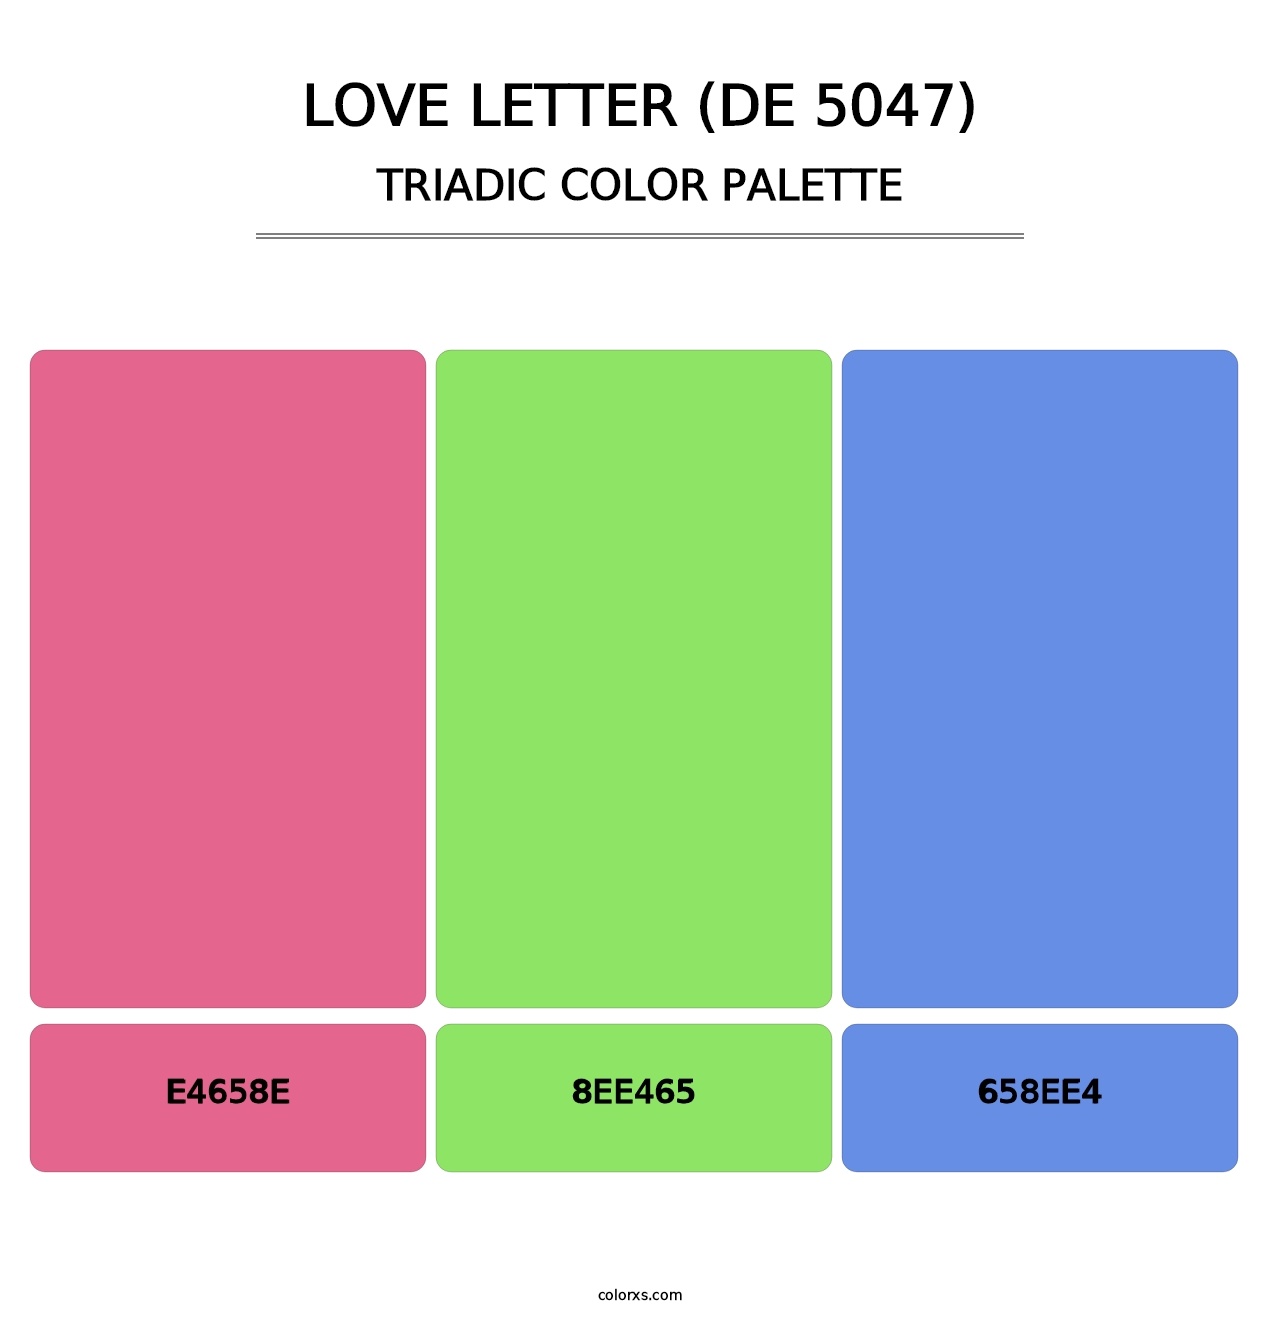 Love Letter (DE 5047) - Triadic Color Palette